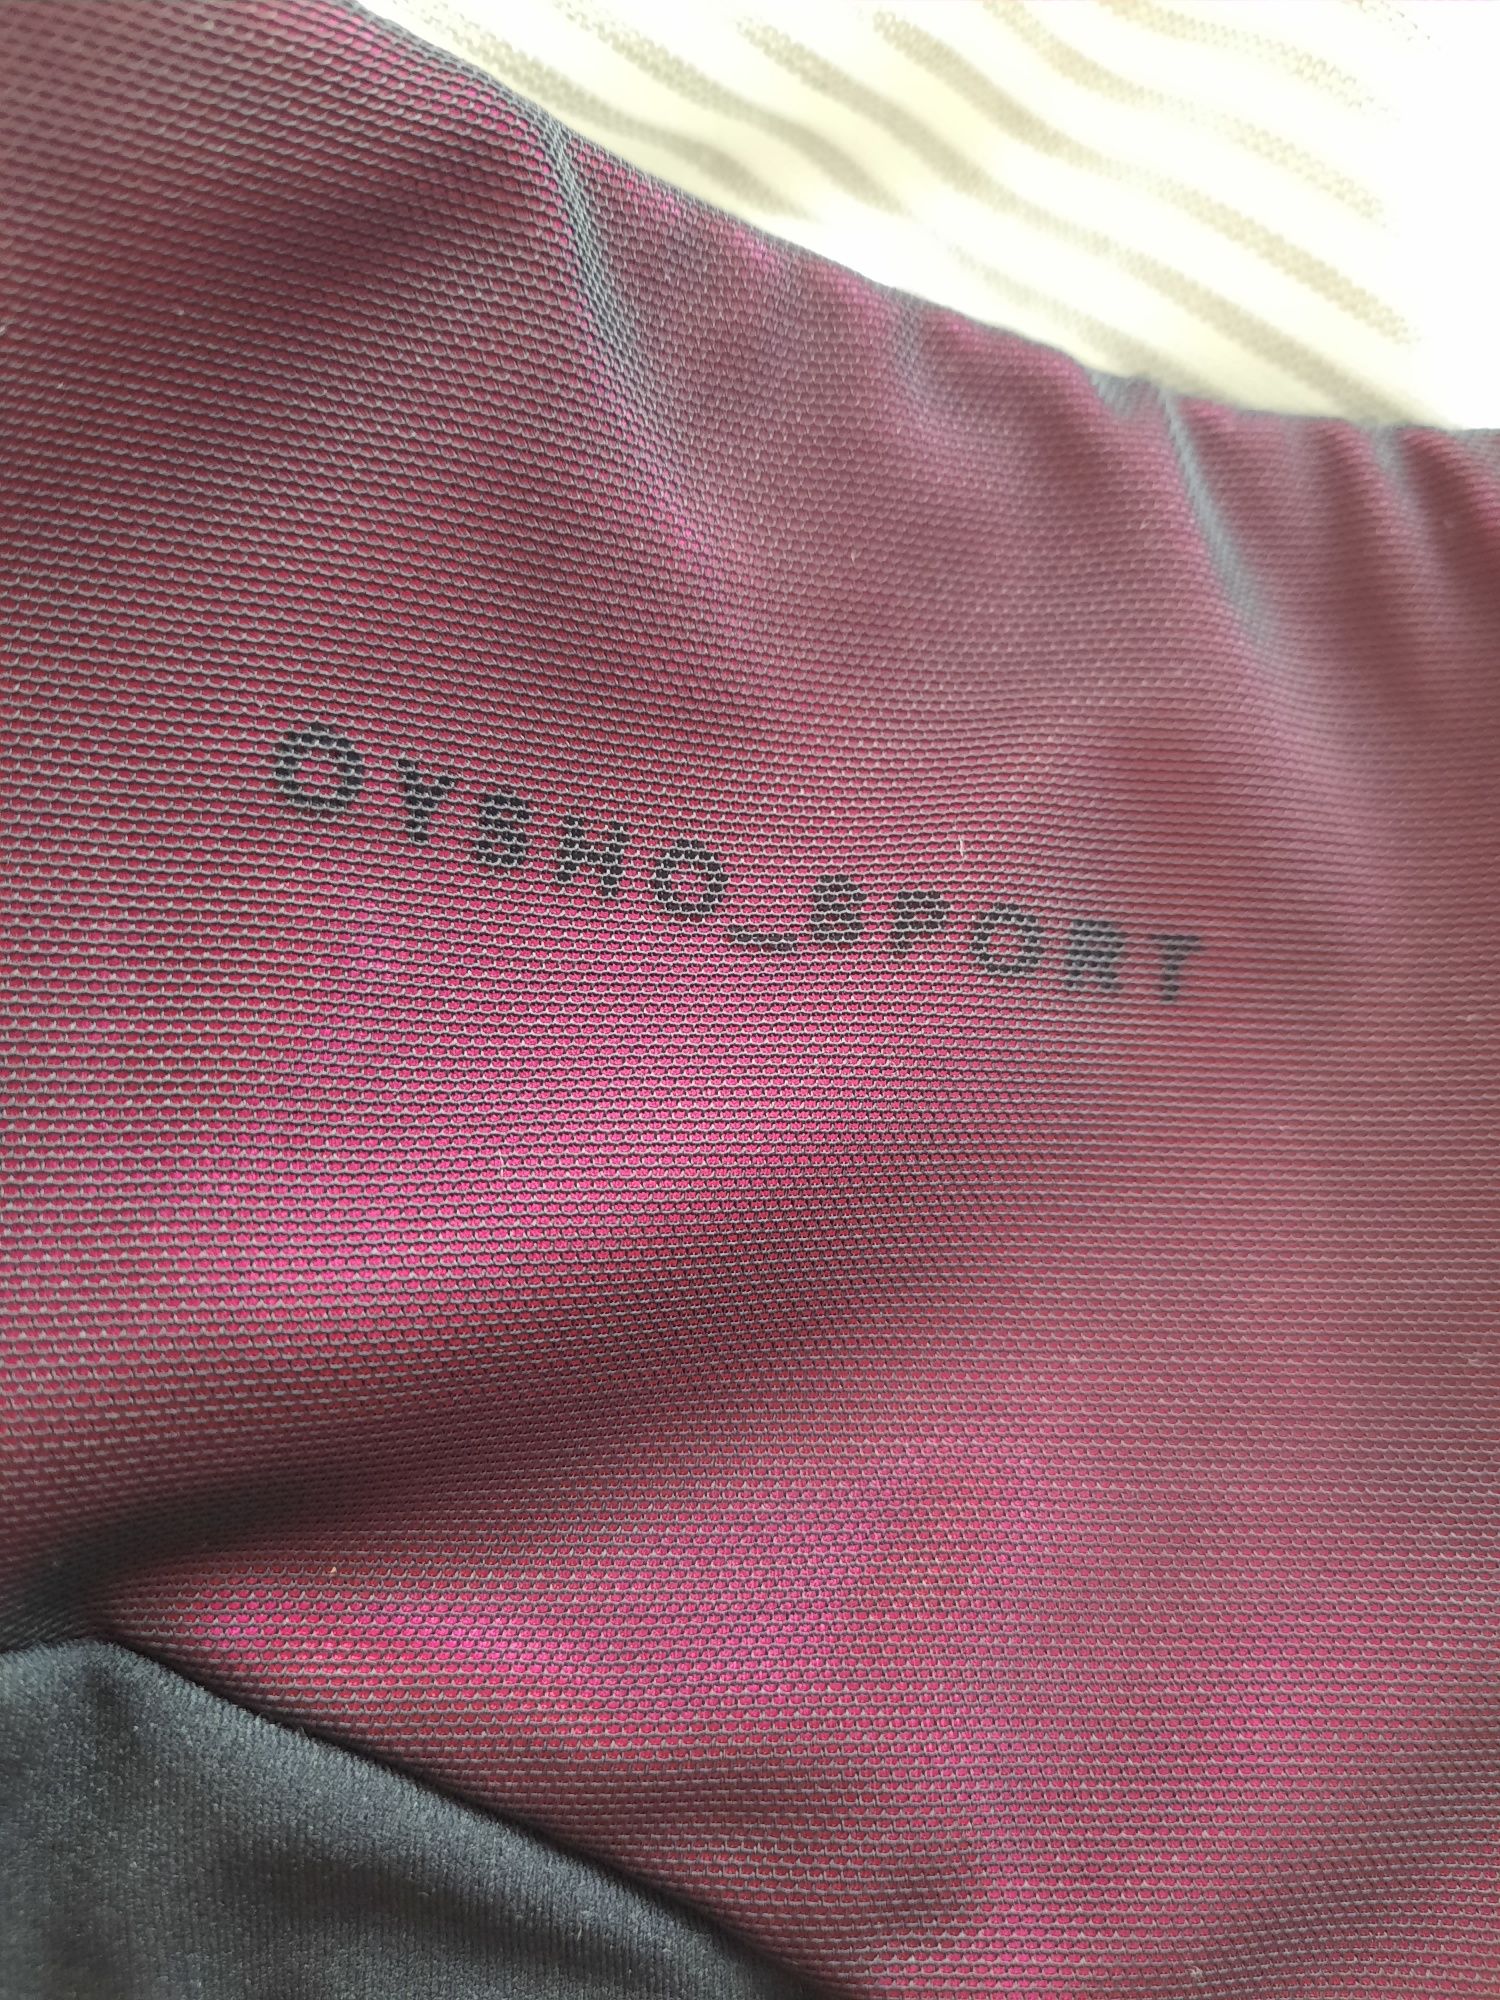 Leggings Oysho Sport XS